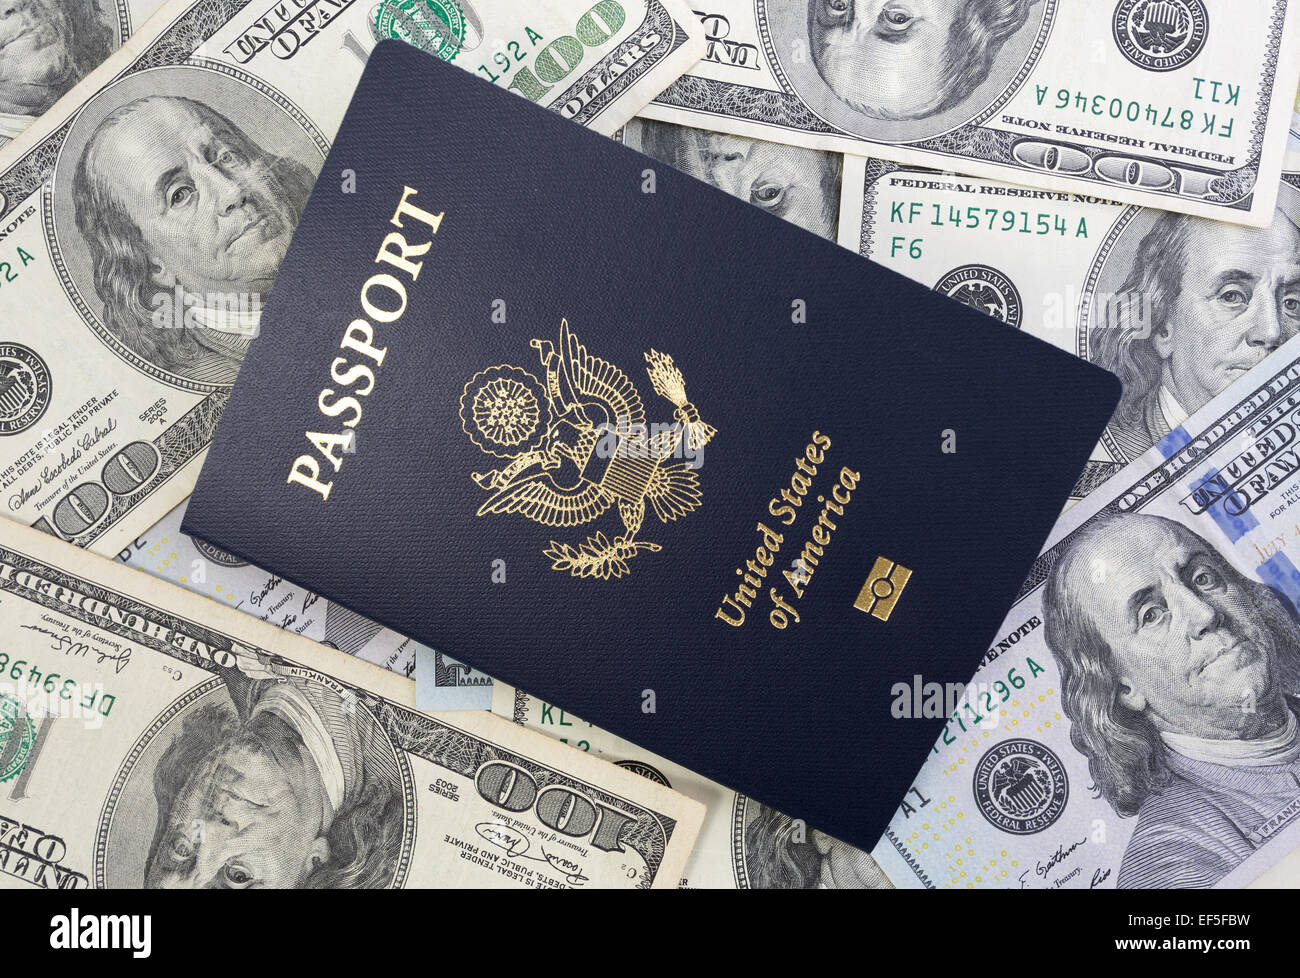 Gli Stati Uniti Passaporto sulla cima di una grande quantità di valuta degli Stati Uniti. Foto Stock